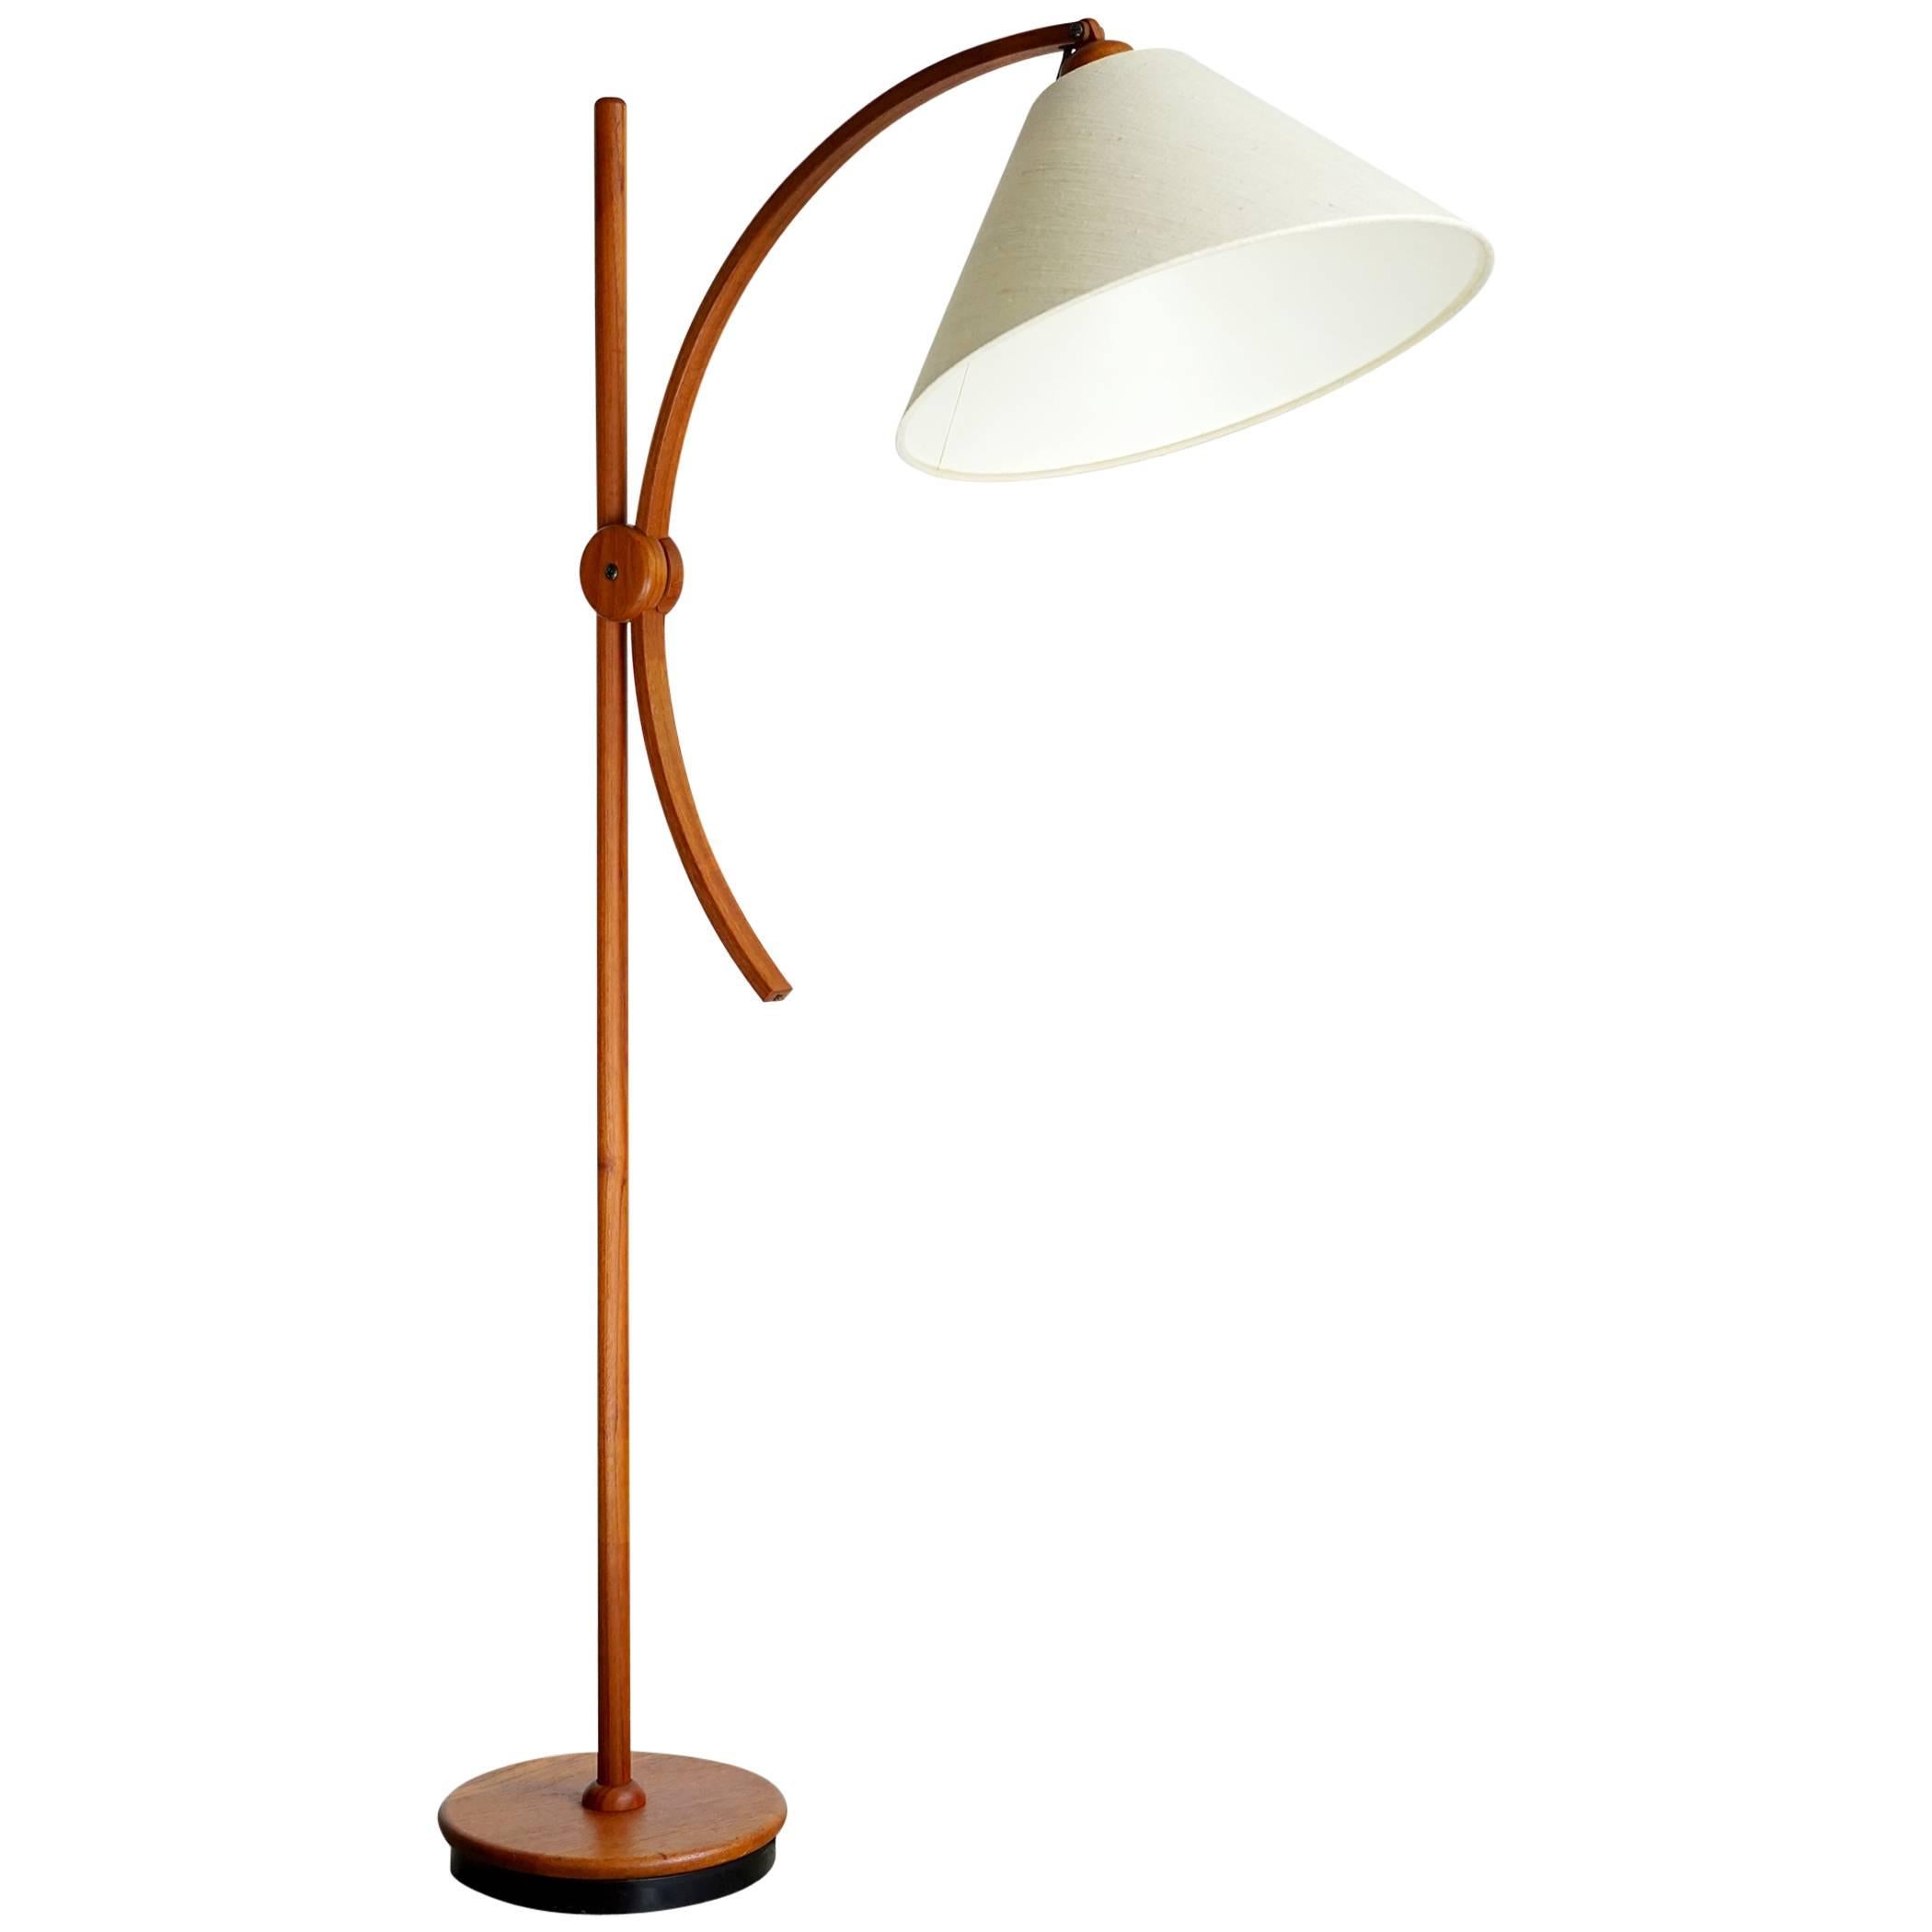 Articulated Scandinavian Floor Lamp